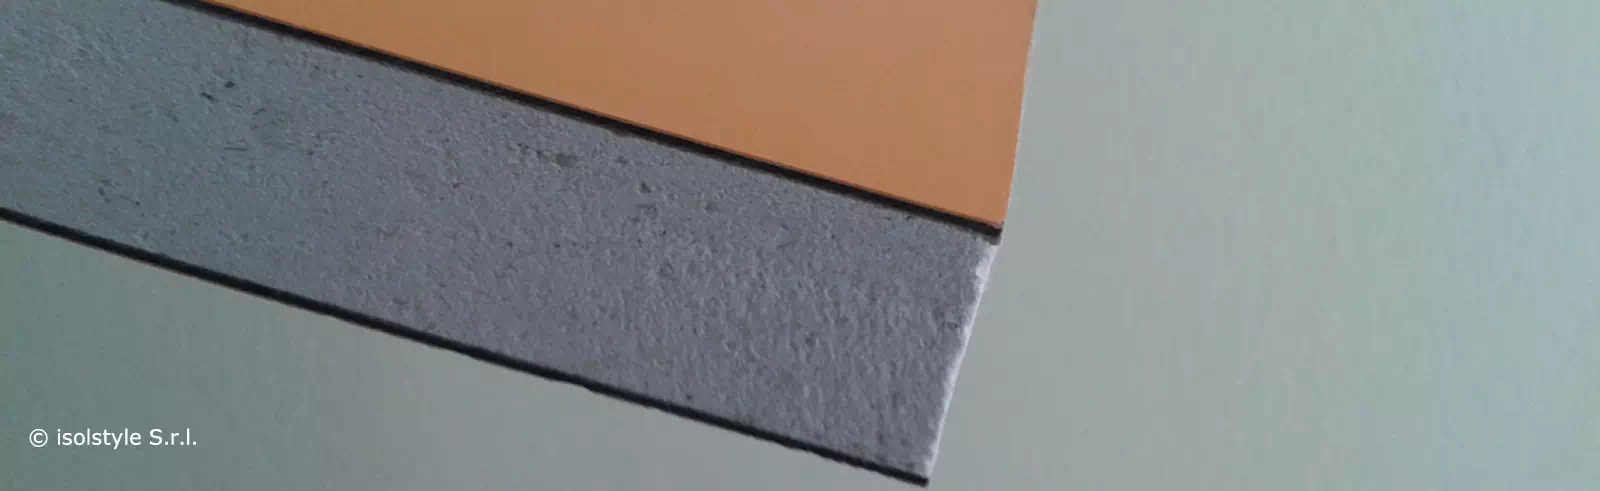 Pannello in silicato di calcio rivestito in laminato HPL decorativo